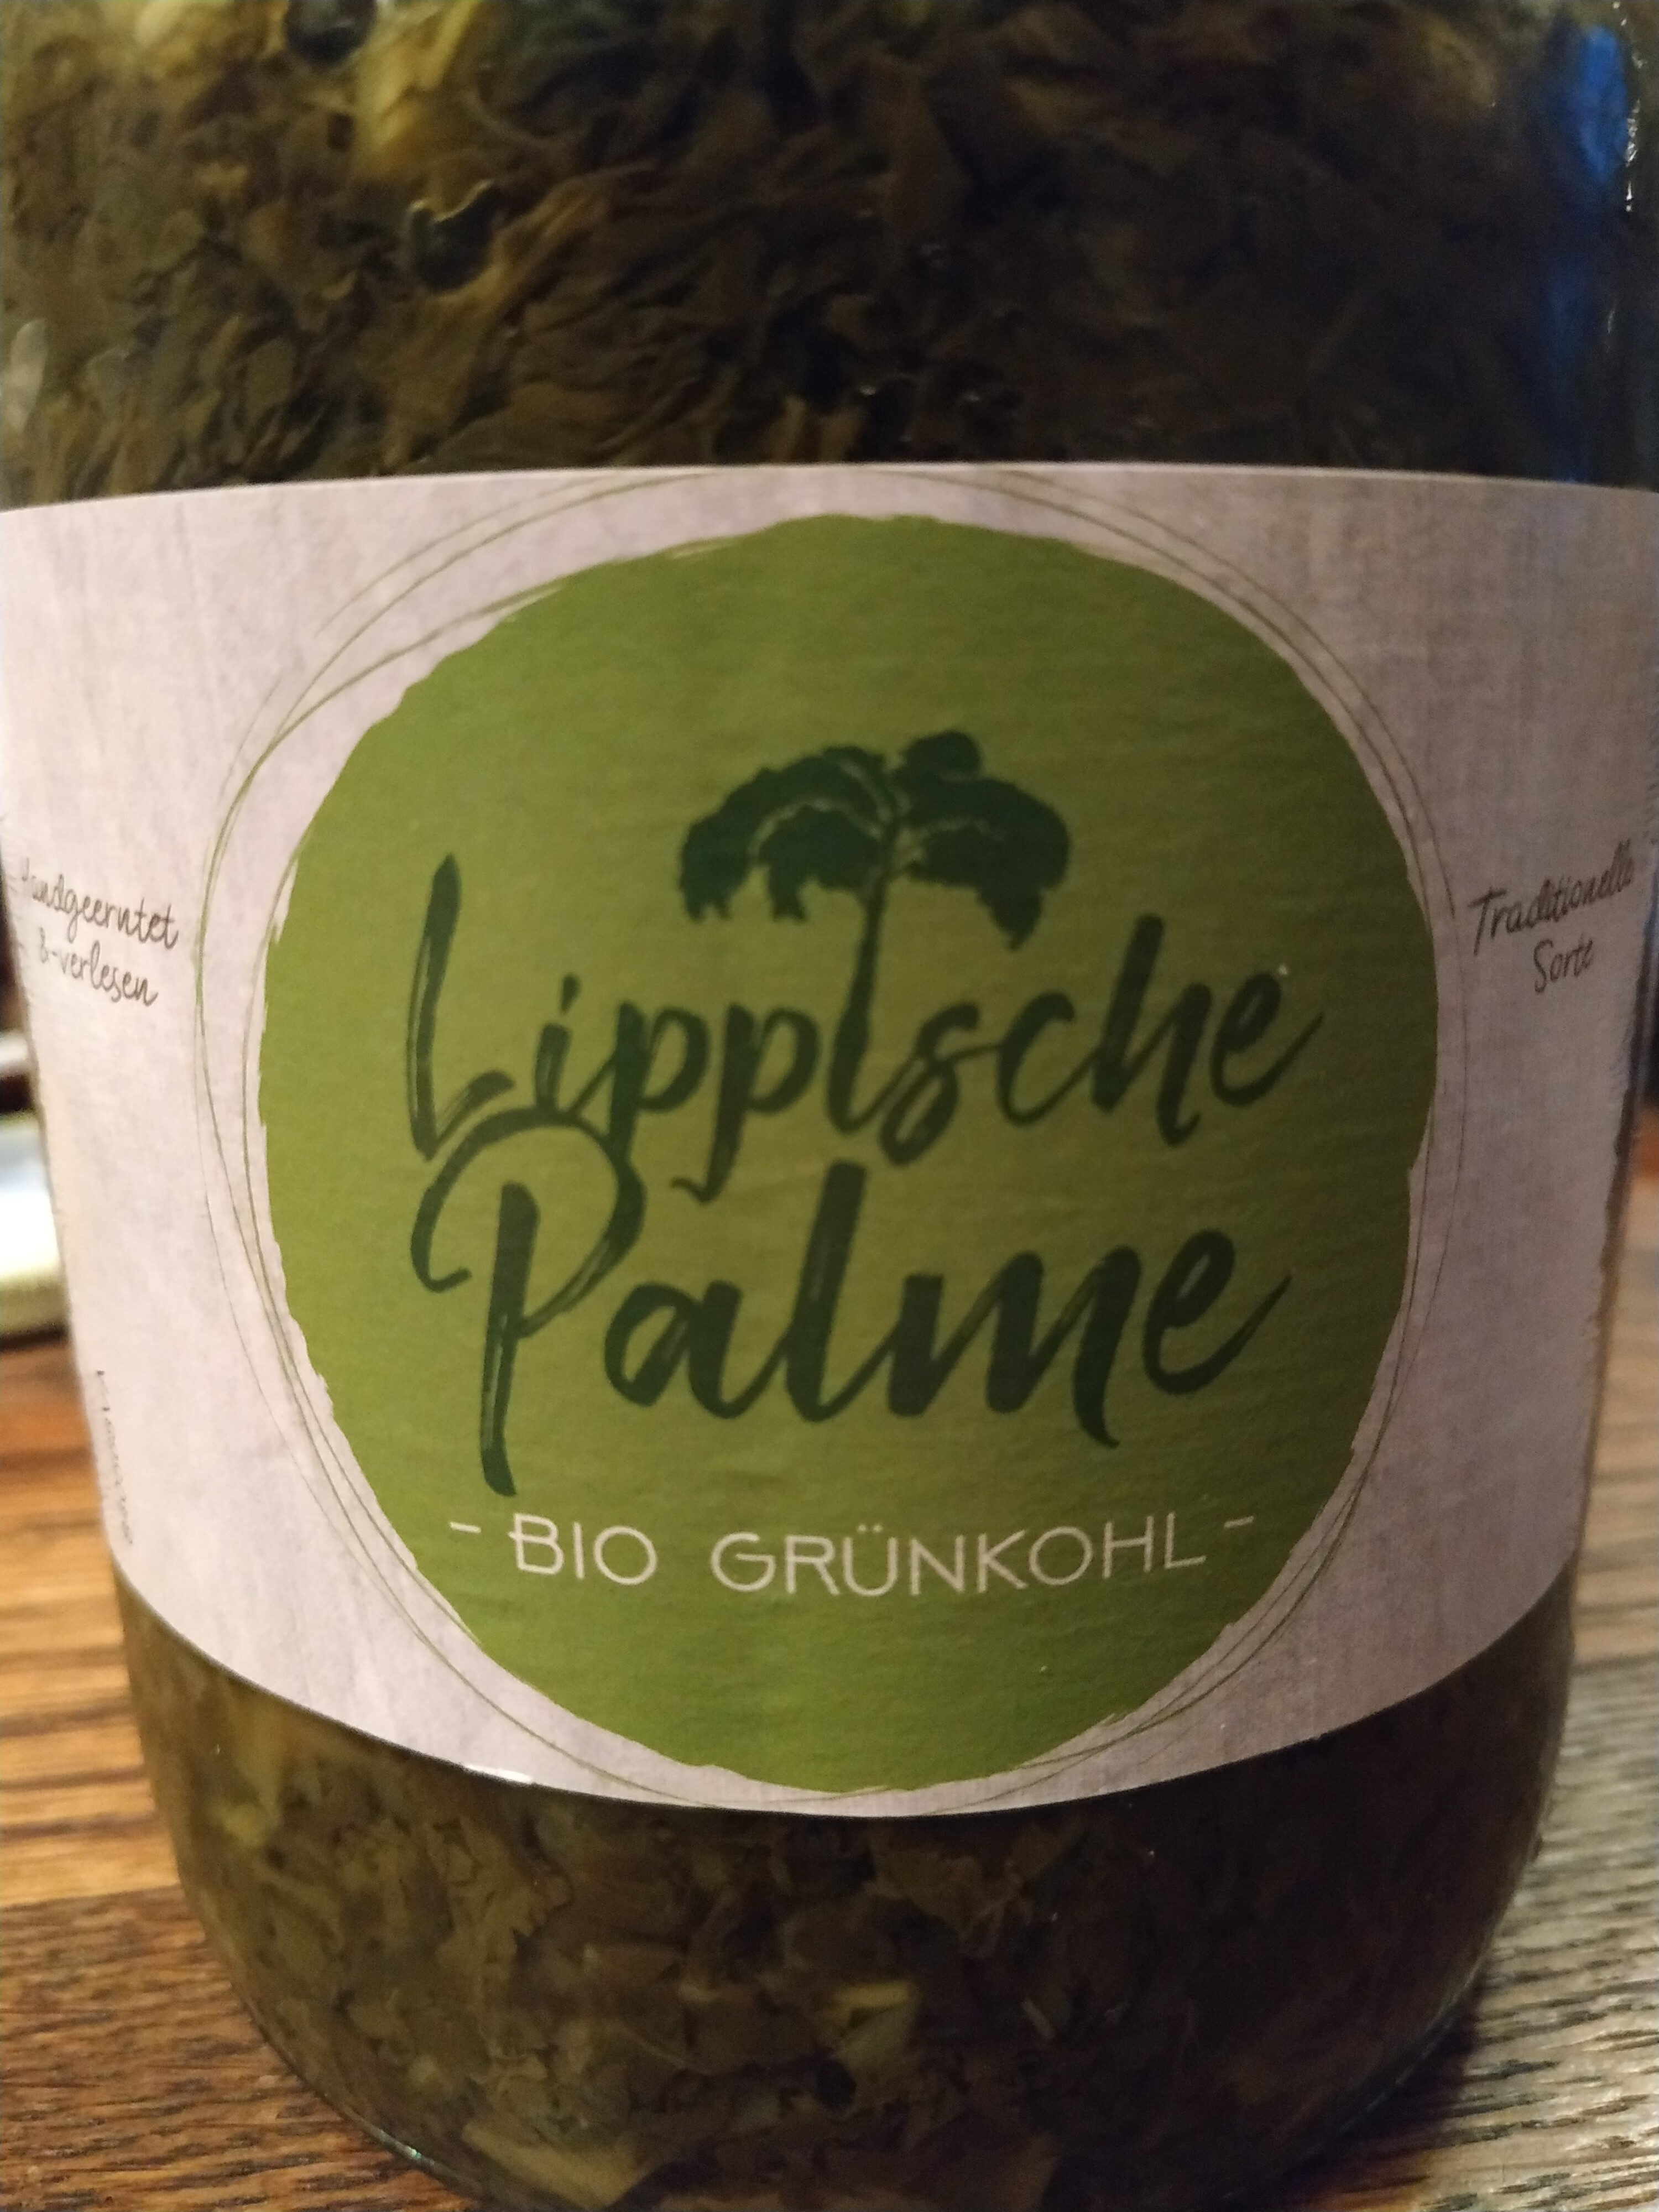 Lippische Palme Bio Grünkohl - Produkt